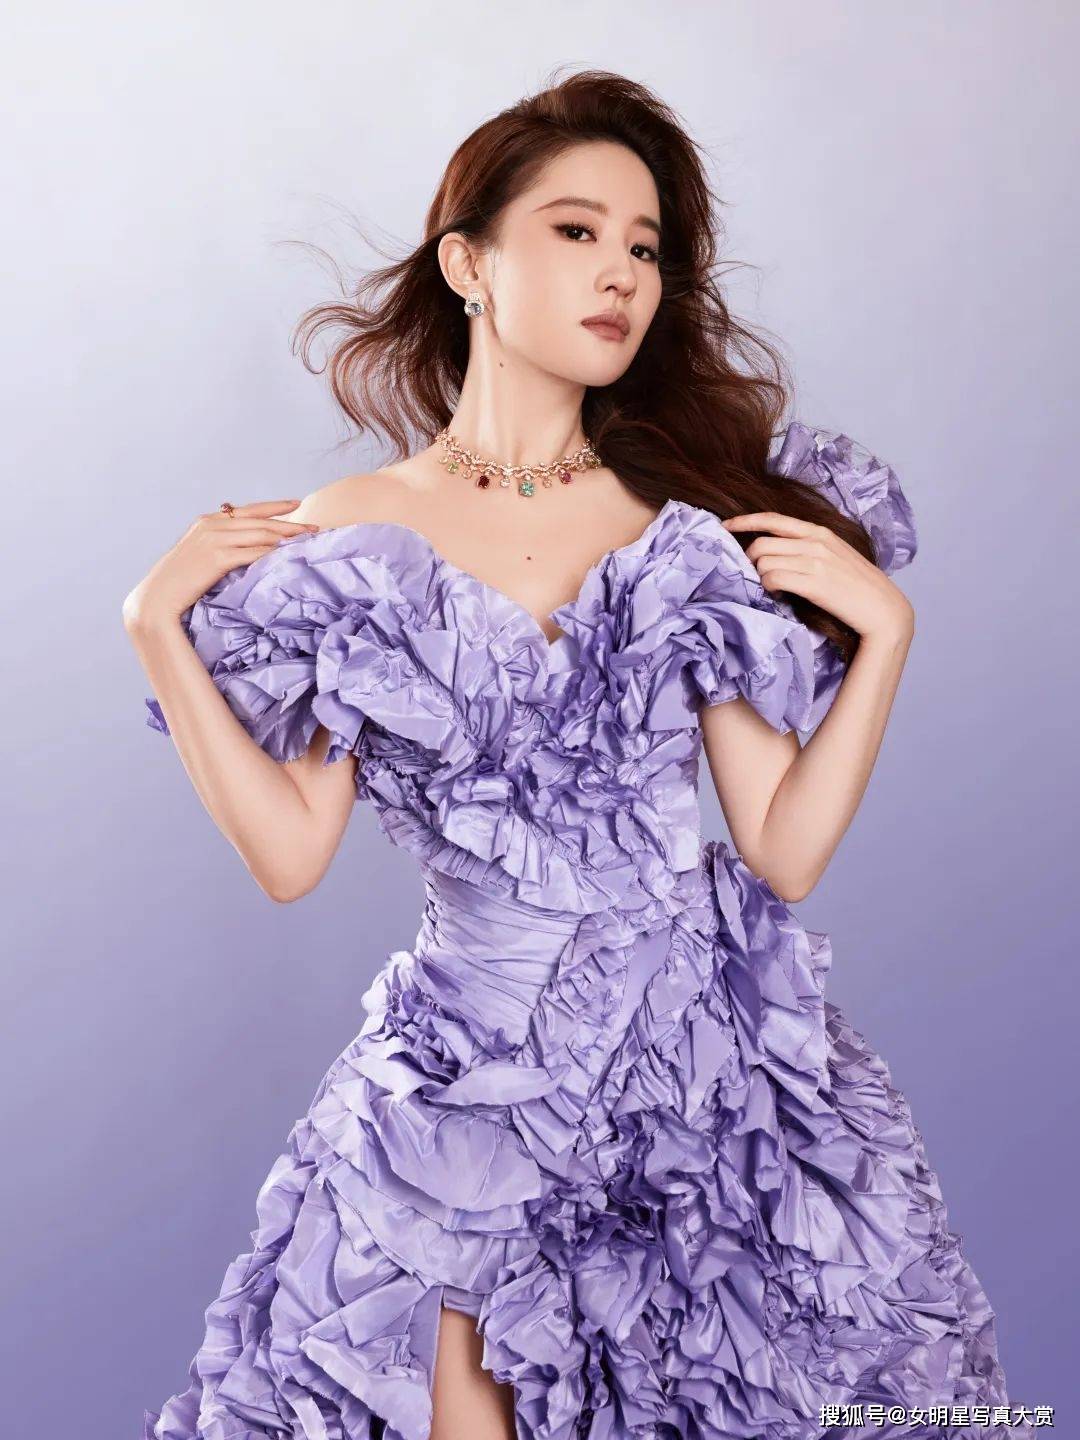 【刘亦菲性感写真美图】紫罗兰色礼裙,优雅浪漫,《星愿》首映礼